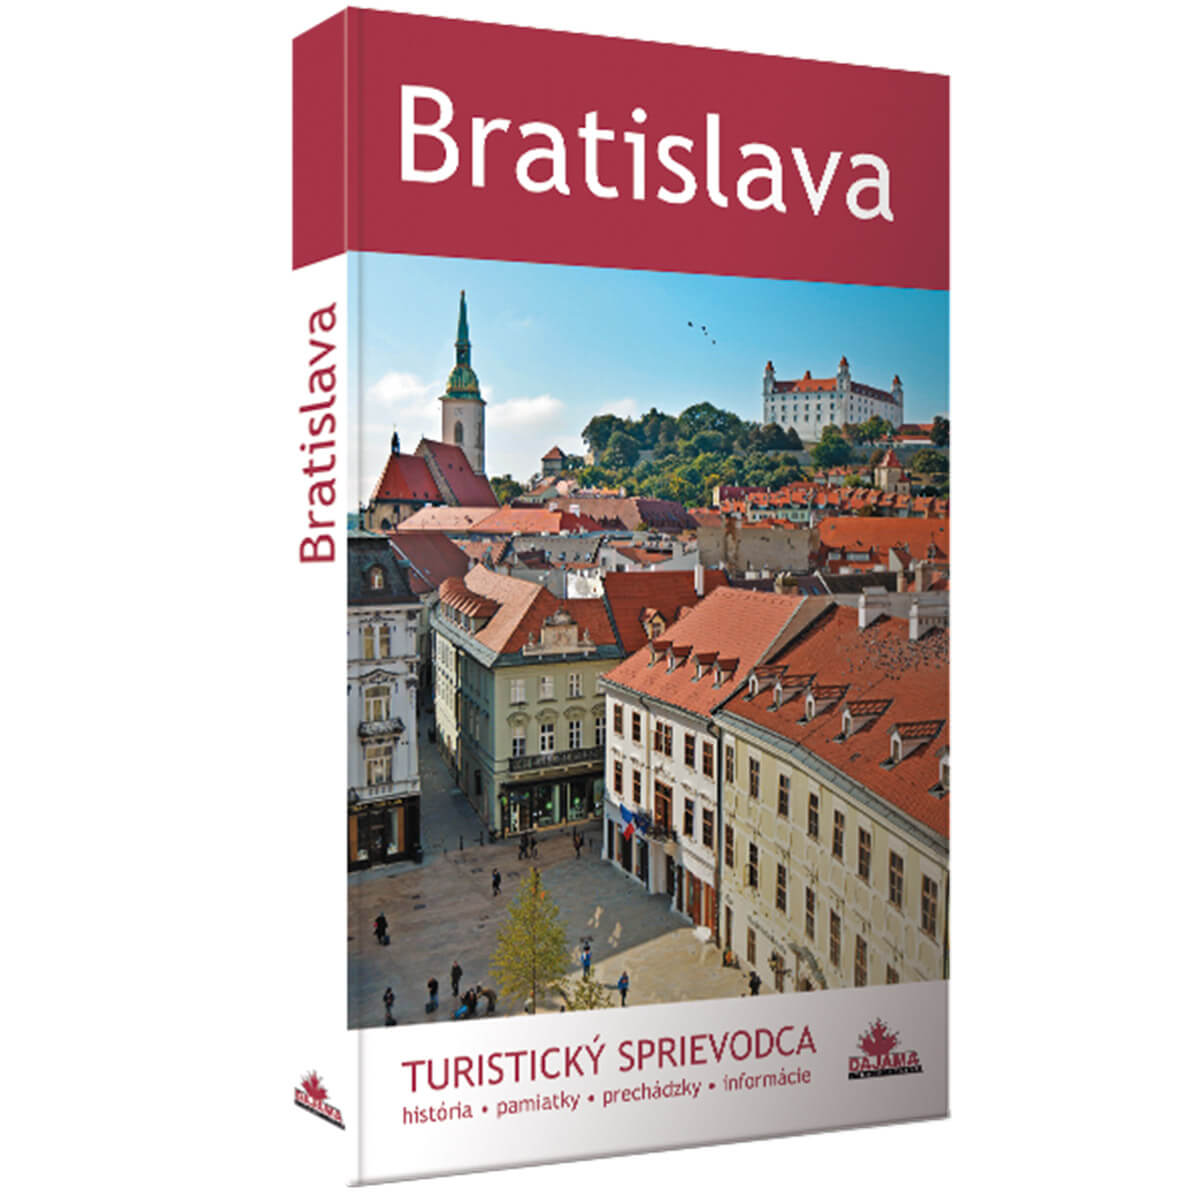 Kniha Bratislava - turistický sprievodca z vydavateľstva Dajama